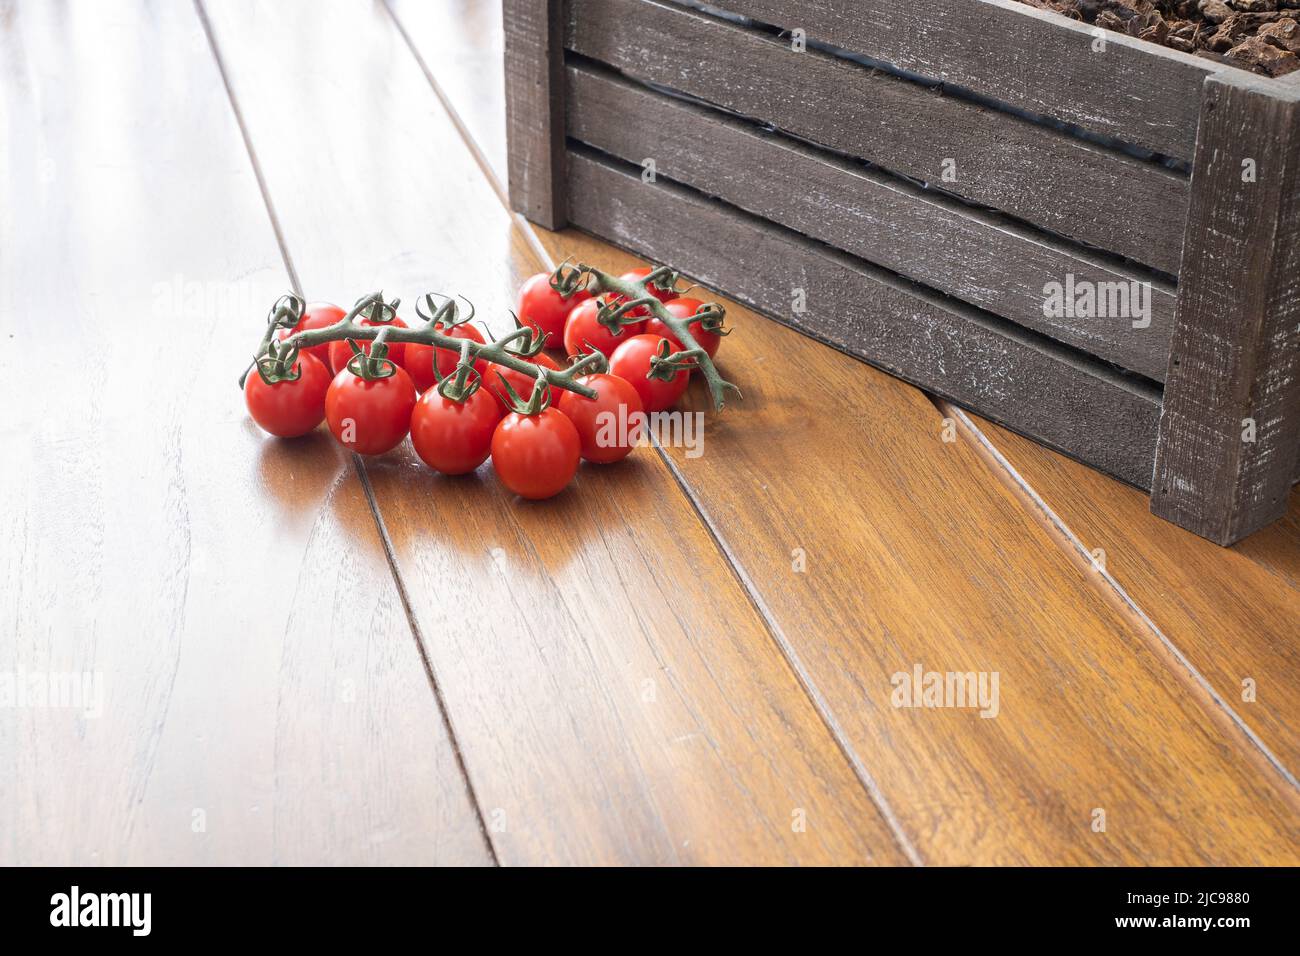 un mazzetto di pomodori ciliegini sul ramo, su un tavolo di legno, insieme ad una scatola di legno scuro con terreno, giardinaggio urbano, coltivazione sostenibile del pomodoro Foto Stock